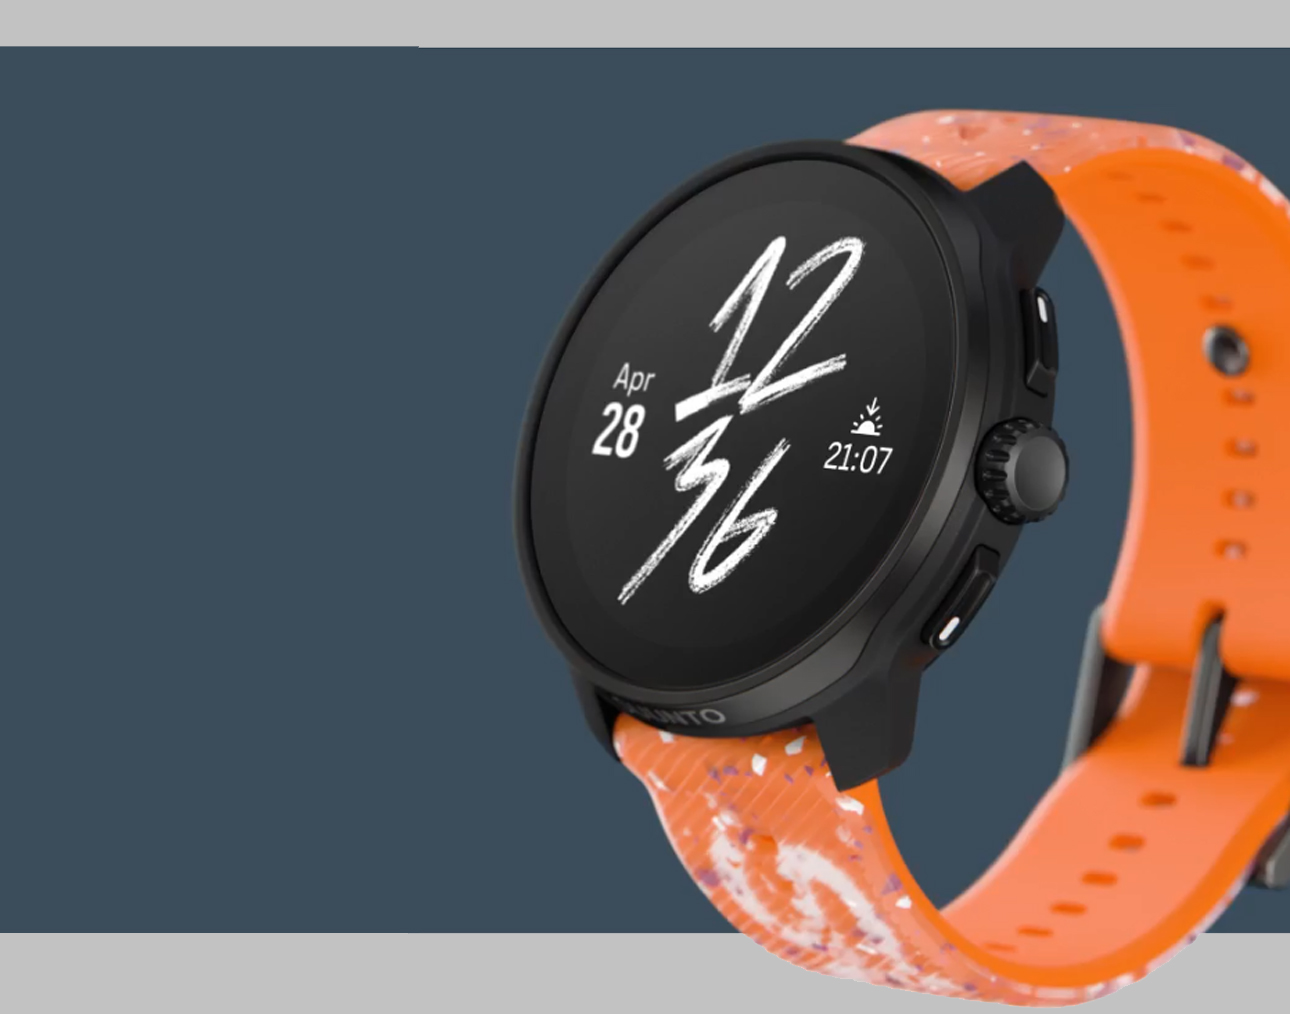 Smartwatch z pomarańczowym paskiem i wyświetlaczem pokazującym datę, godzinę oraz dzień tygodnia.